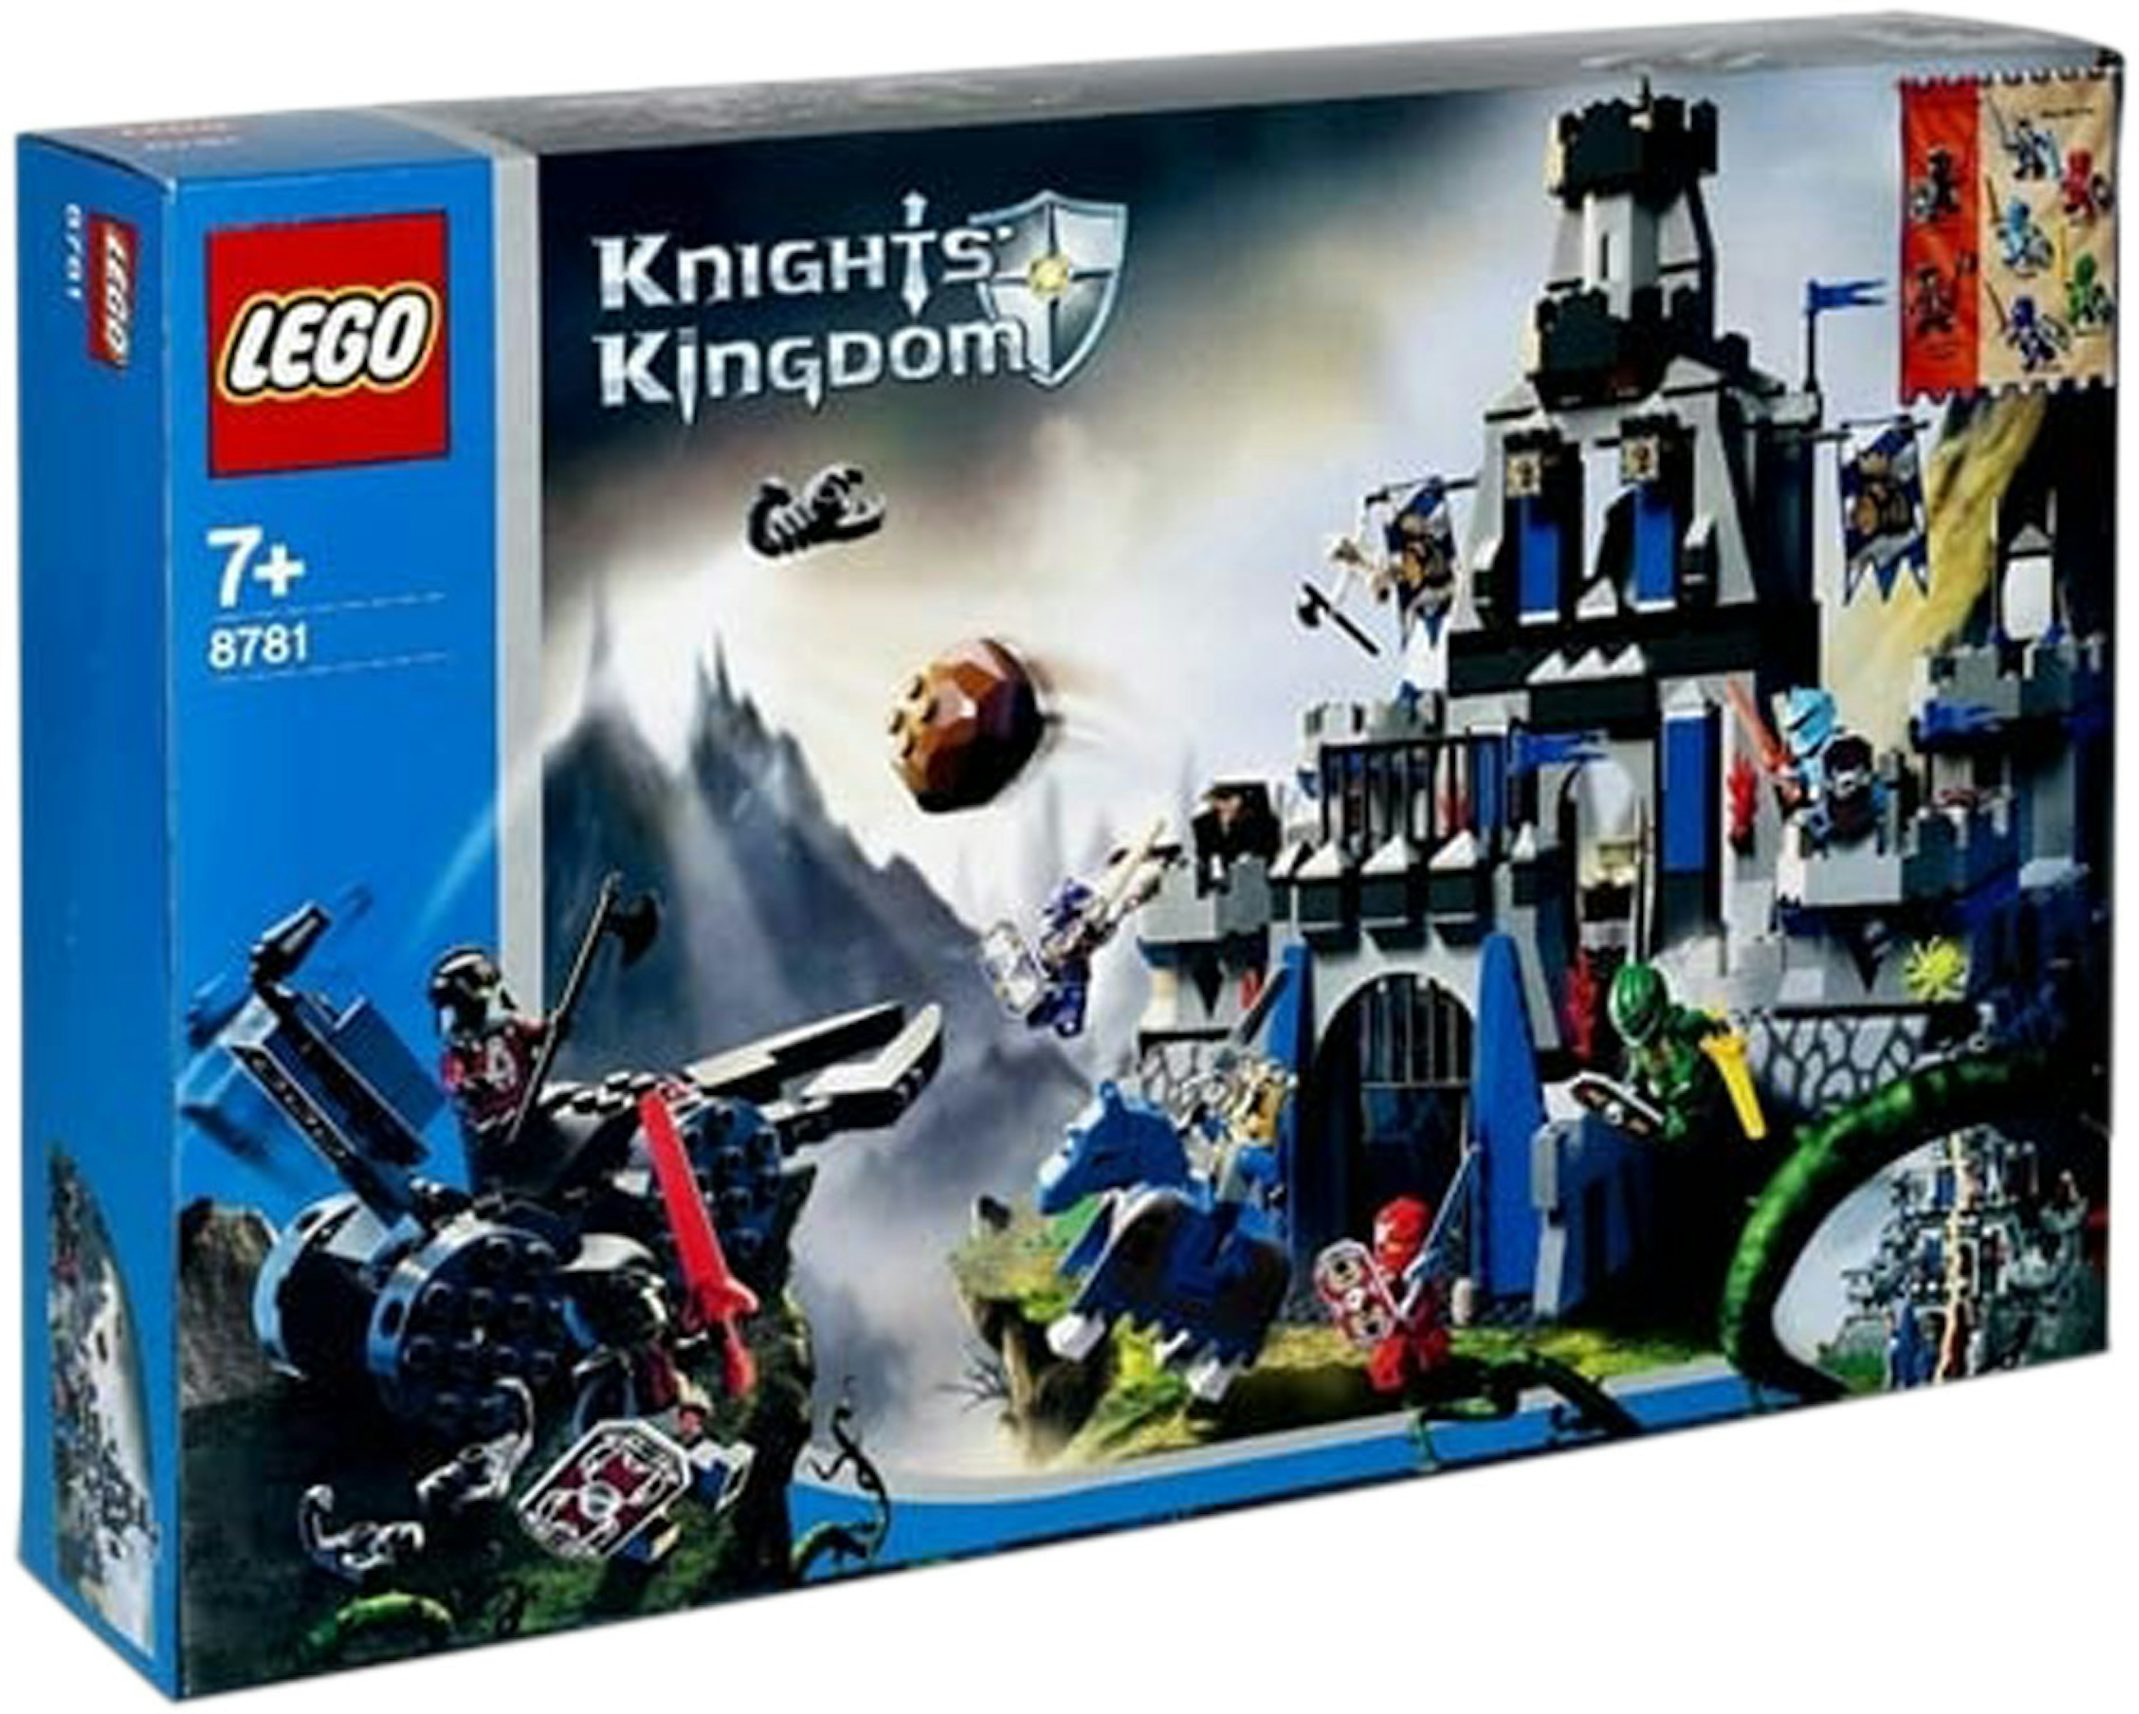 LEGO Castle The Castle of Morcia Set 8781 - US